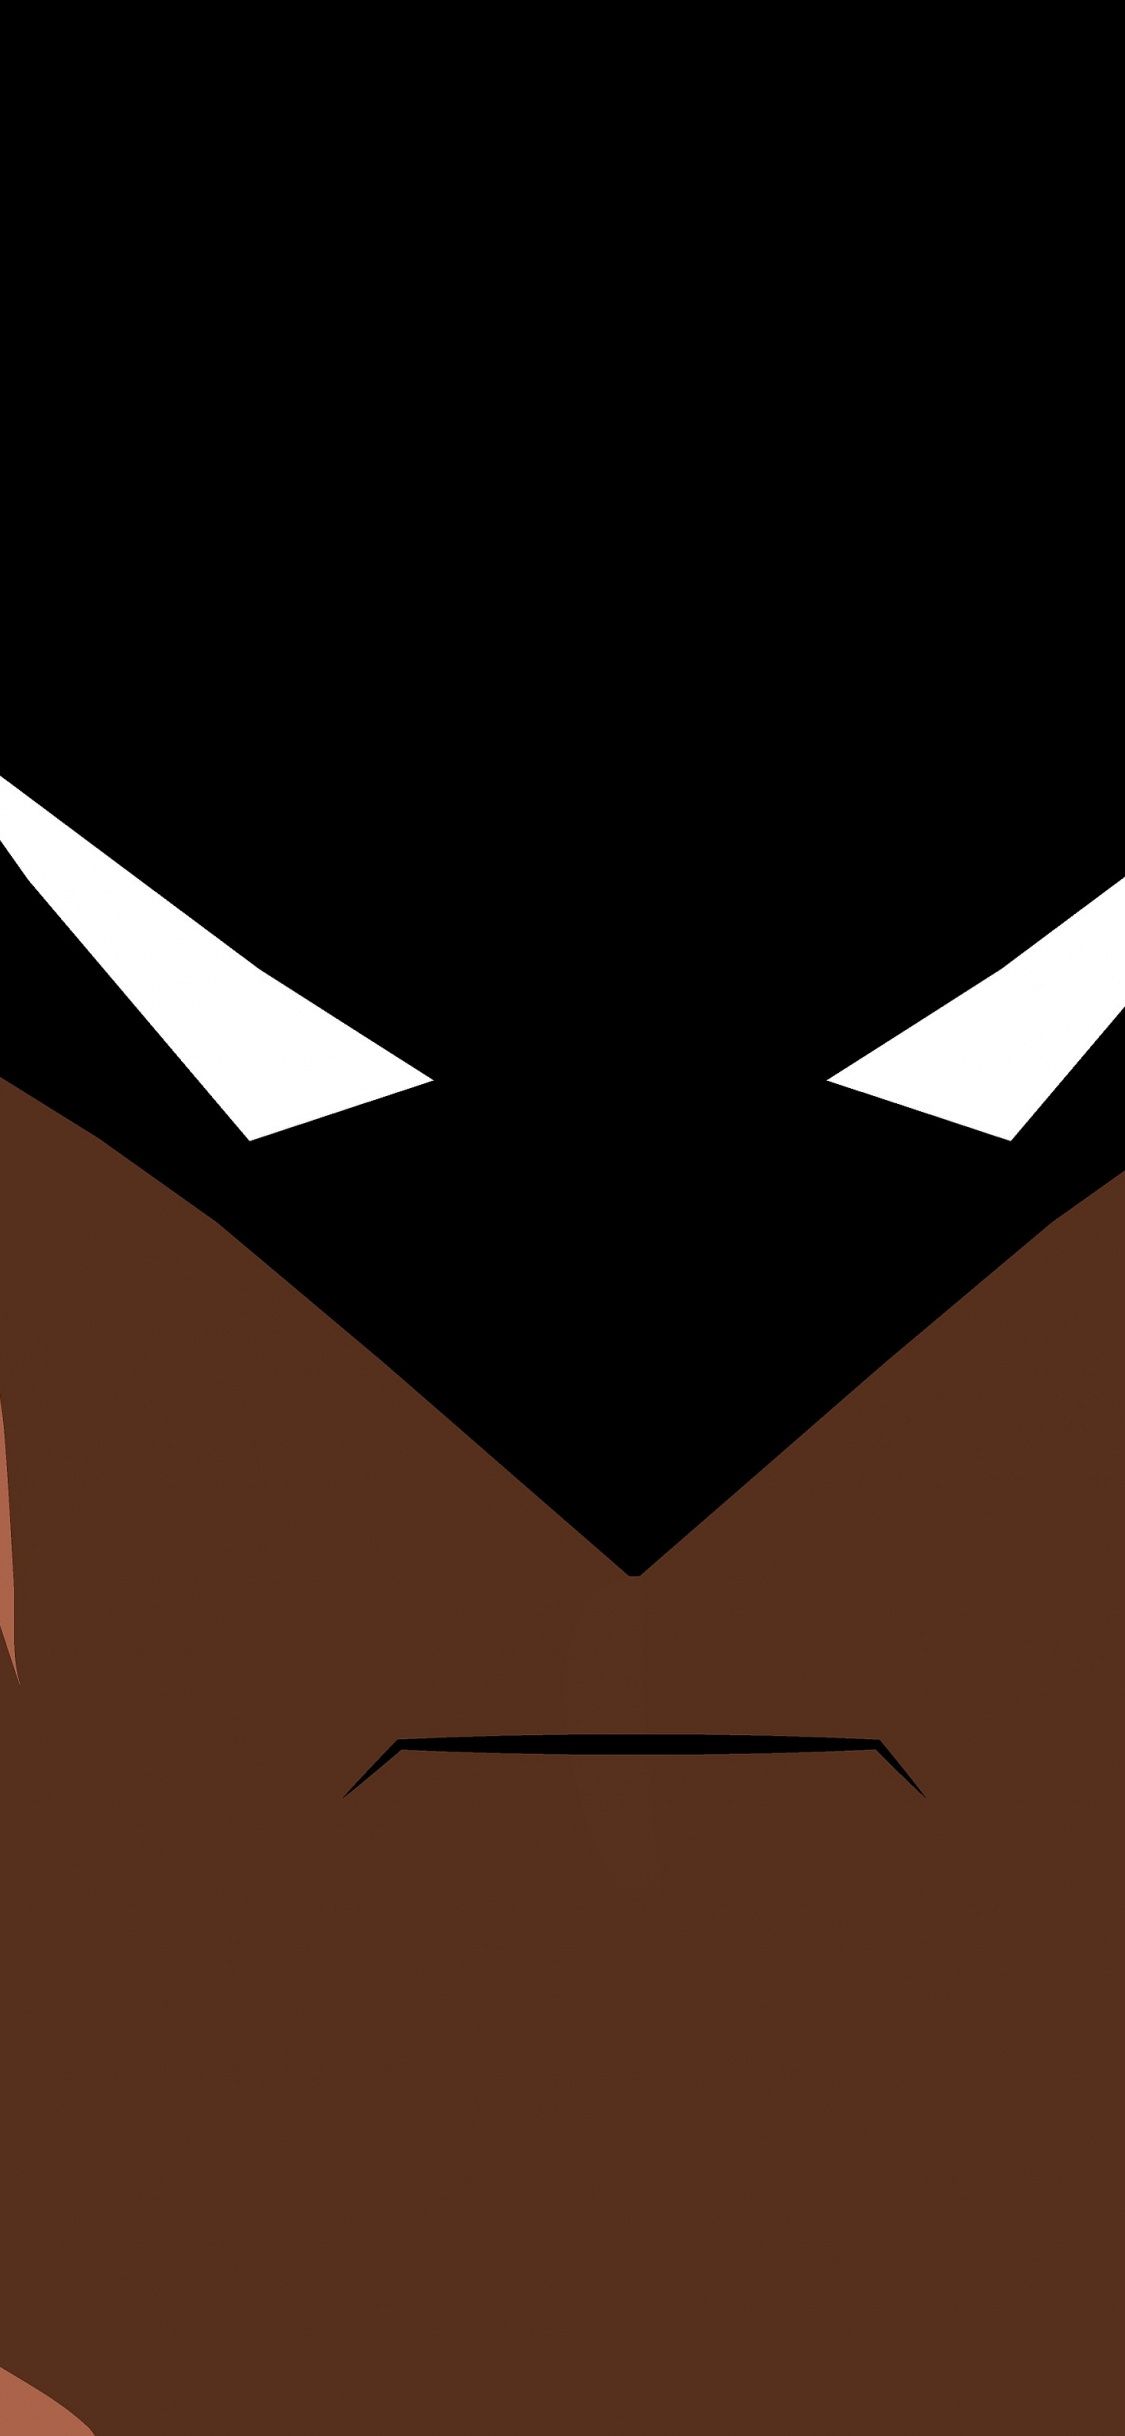 Download 1125x2436 wallpaper batman's face, minimalism, dark